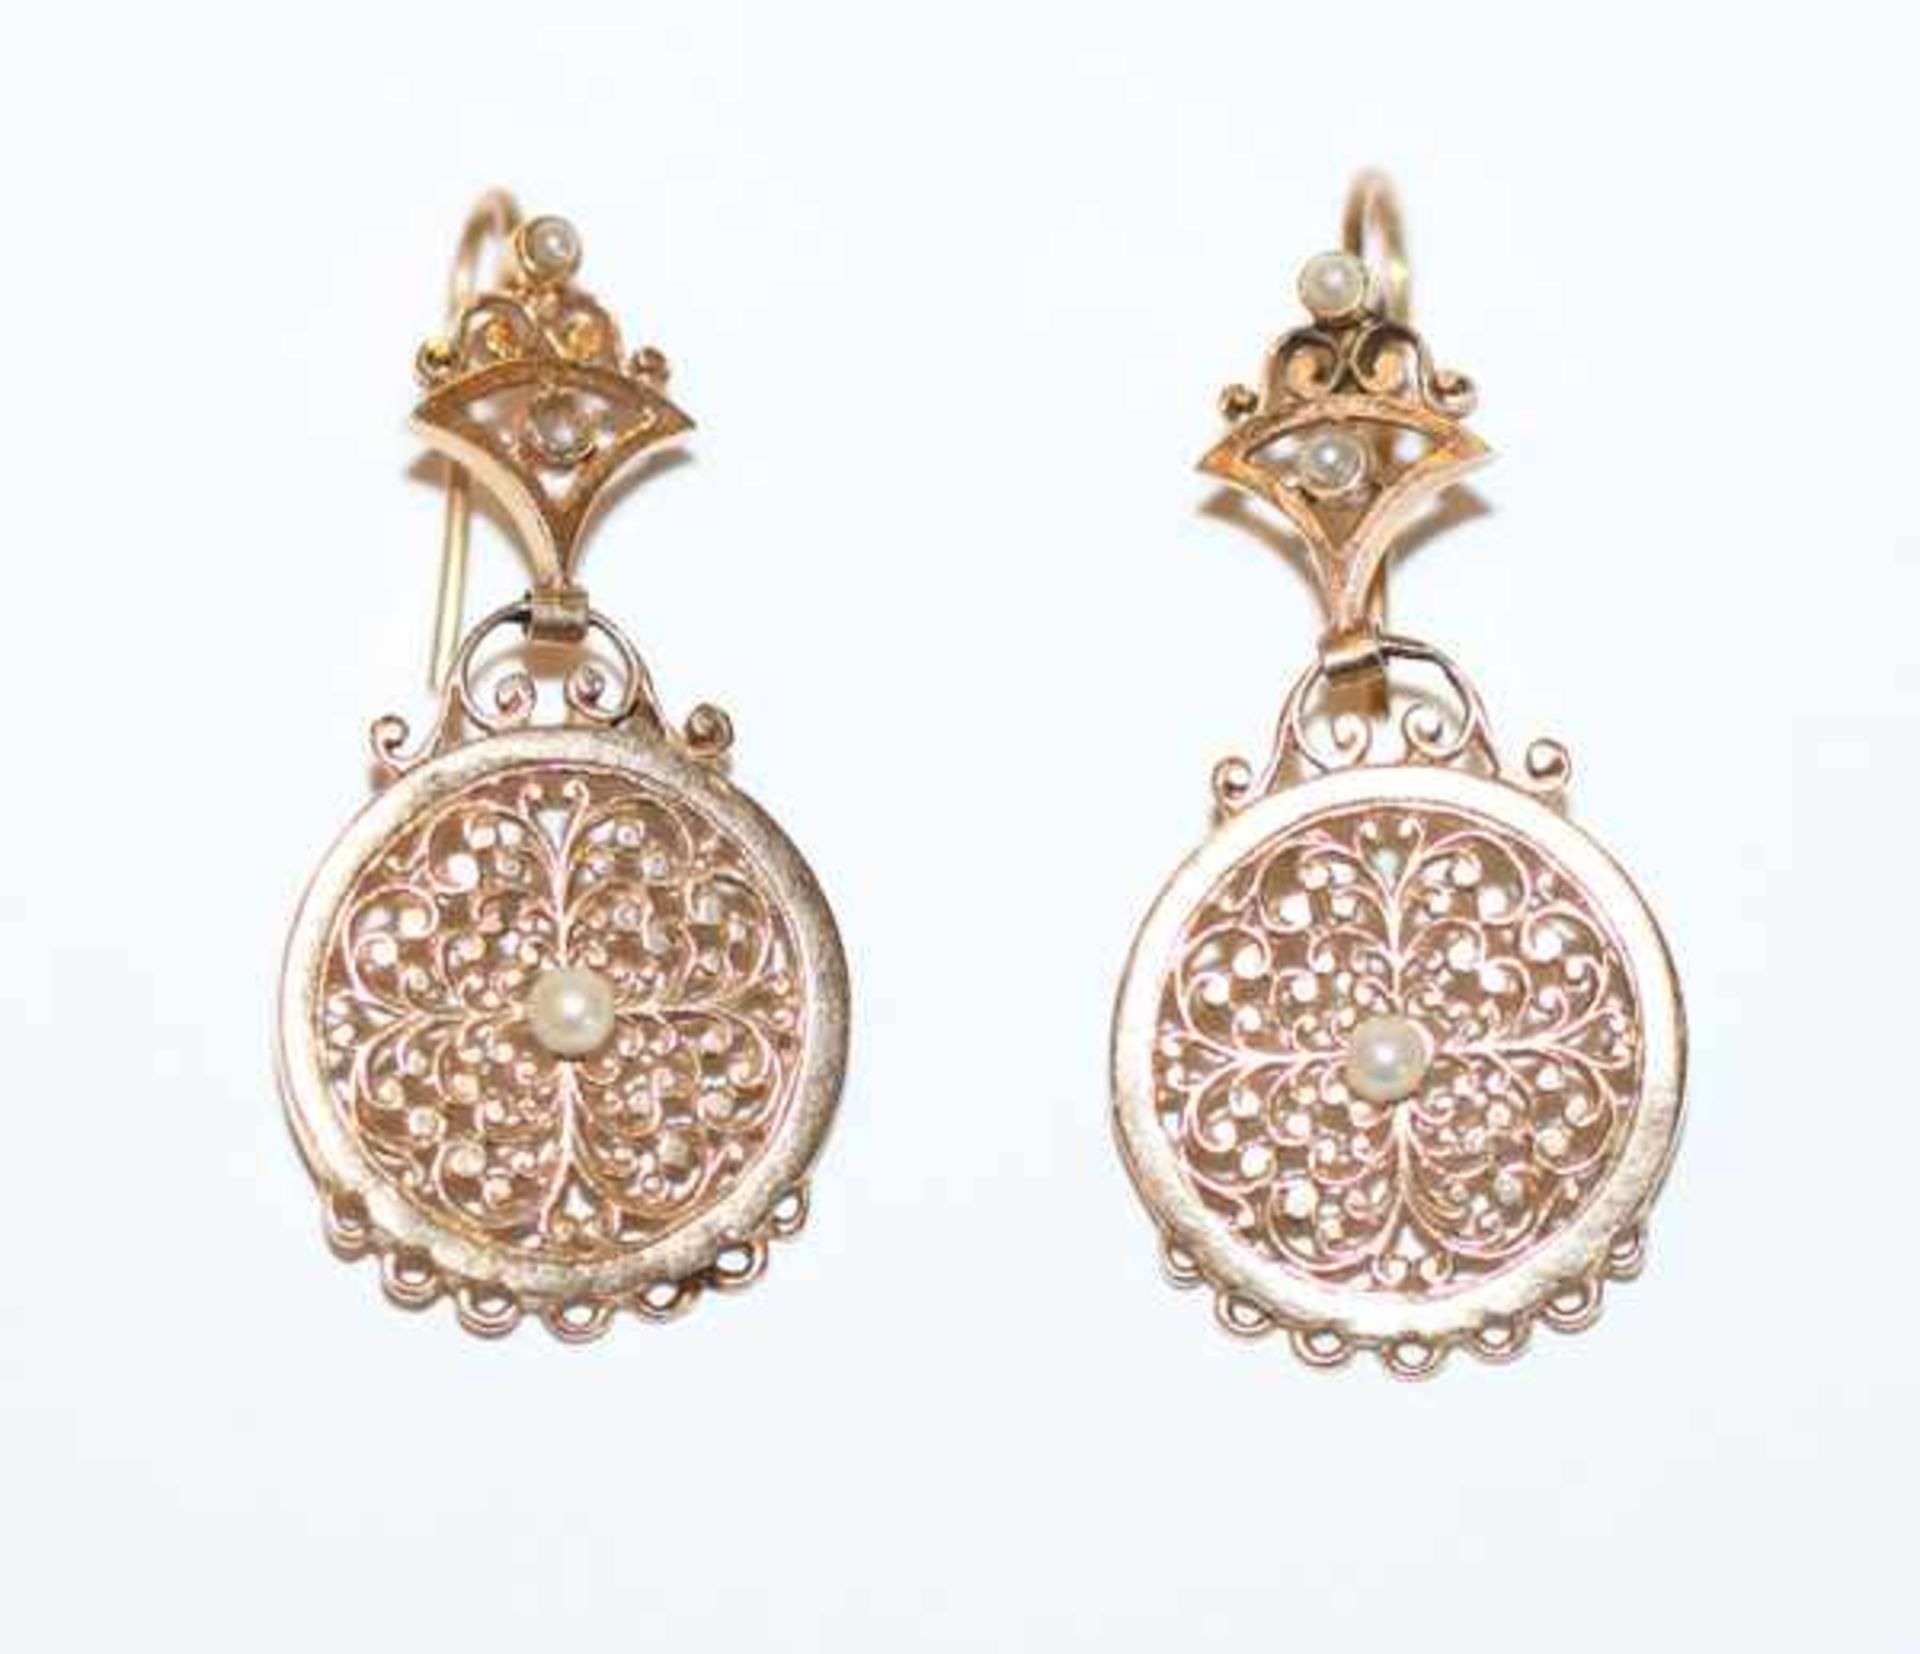 Paar dekorative 12 k (500 Gold) Ohrhänger mit kleinen Perlchen, eine Perle fehlt, L 3,8 cm, schöne